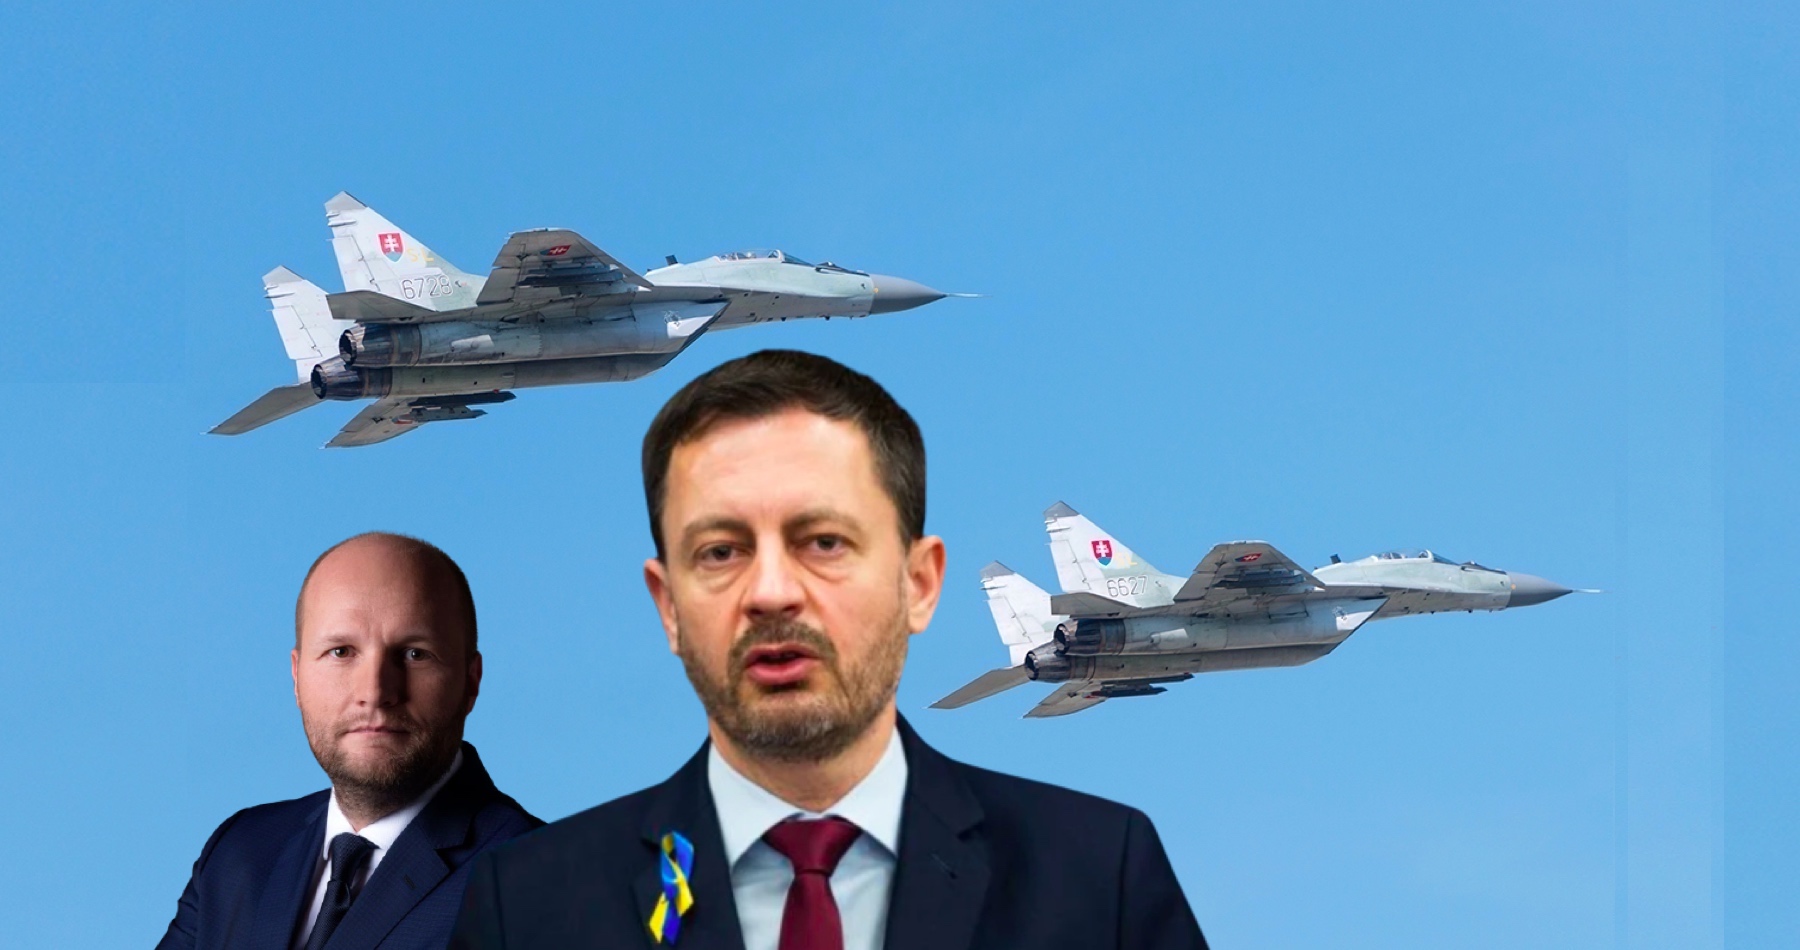 VIDEO: Slovenská vláda se prý zalekla zprávy tajných služeb a stíhačky MiG-29 poslala na Ukrajinu v rozmontovaném stavu po silnici a na sovětských tahačích KrAZ ukrajinské armády! Ta kvůli tomu odstranila z tahačů insignie 15. Letecké brigády z Kyjeva! Moskva by totiž mohla udeřit i na slovenská letiště, pokud by stíhačky vzlétly do bojové zóny nad Ukrajinou z letiště ve členské zemi NATO! 